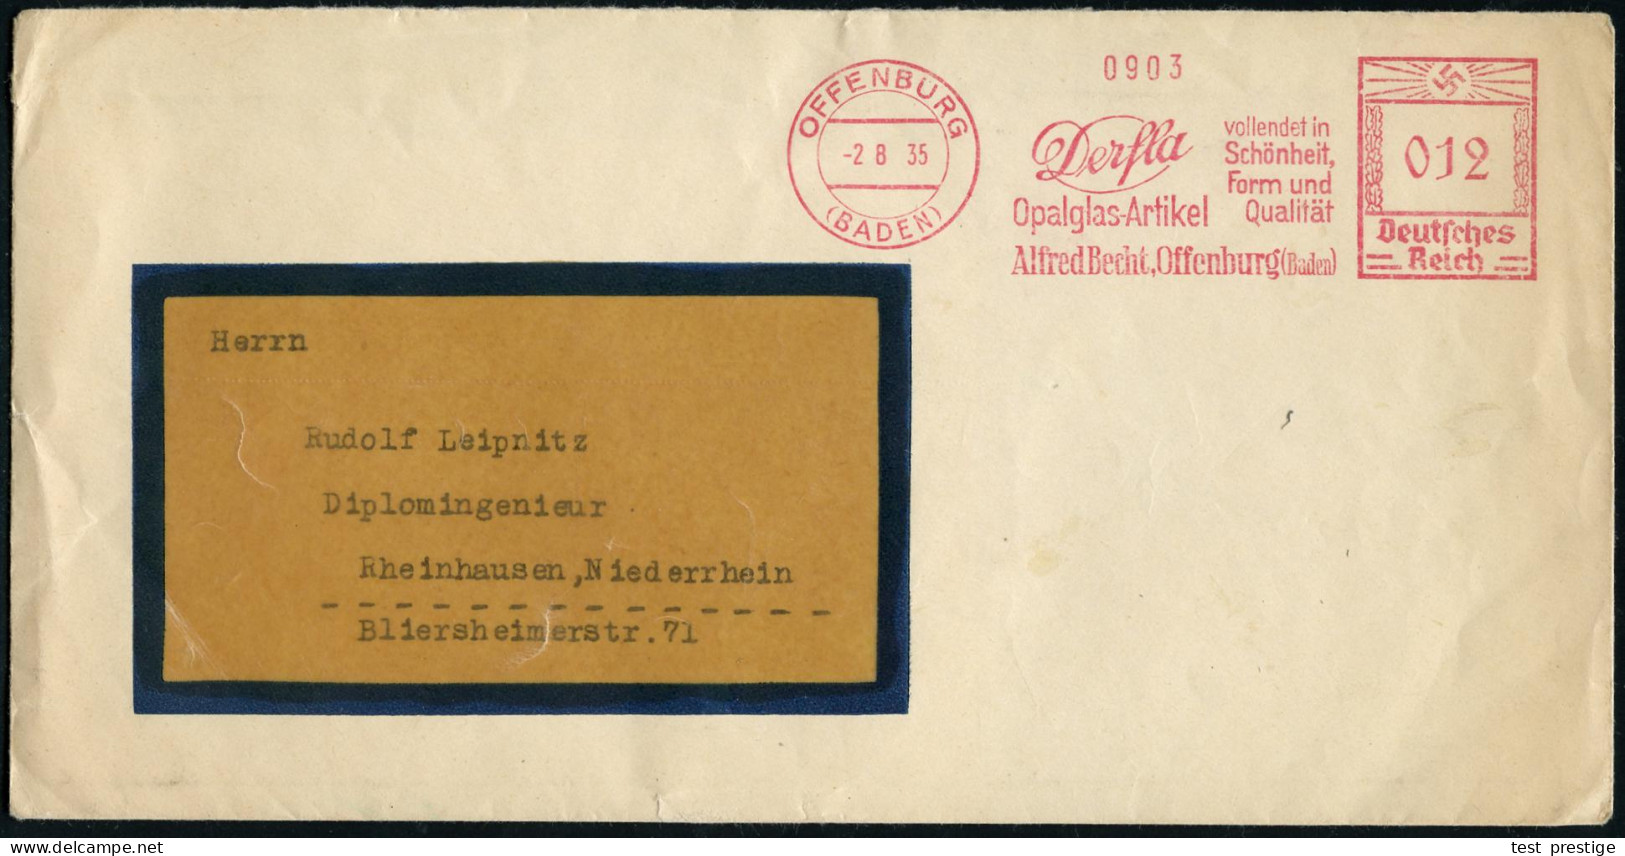 OFFENBURG/ (BADEN)/ Derfla/ Opalglas-Artikel/ Alfred Becht.. 1935 (2.8.) AFS Francotyp + Rs. Produkt-Verschluß-Oblate Mi - Vidrios Y Vitrales